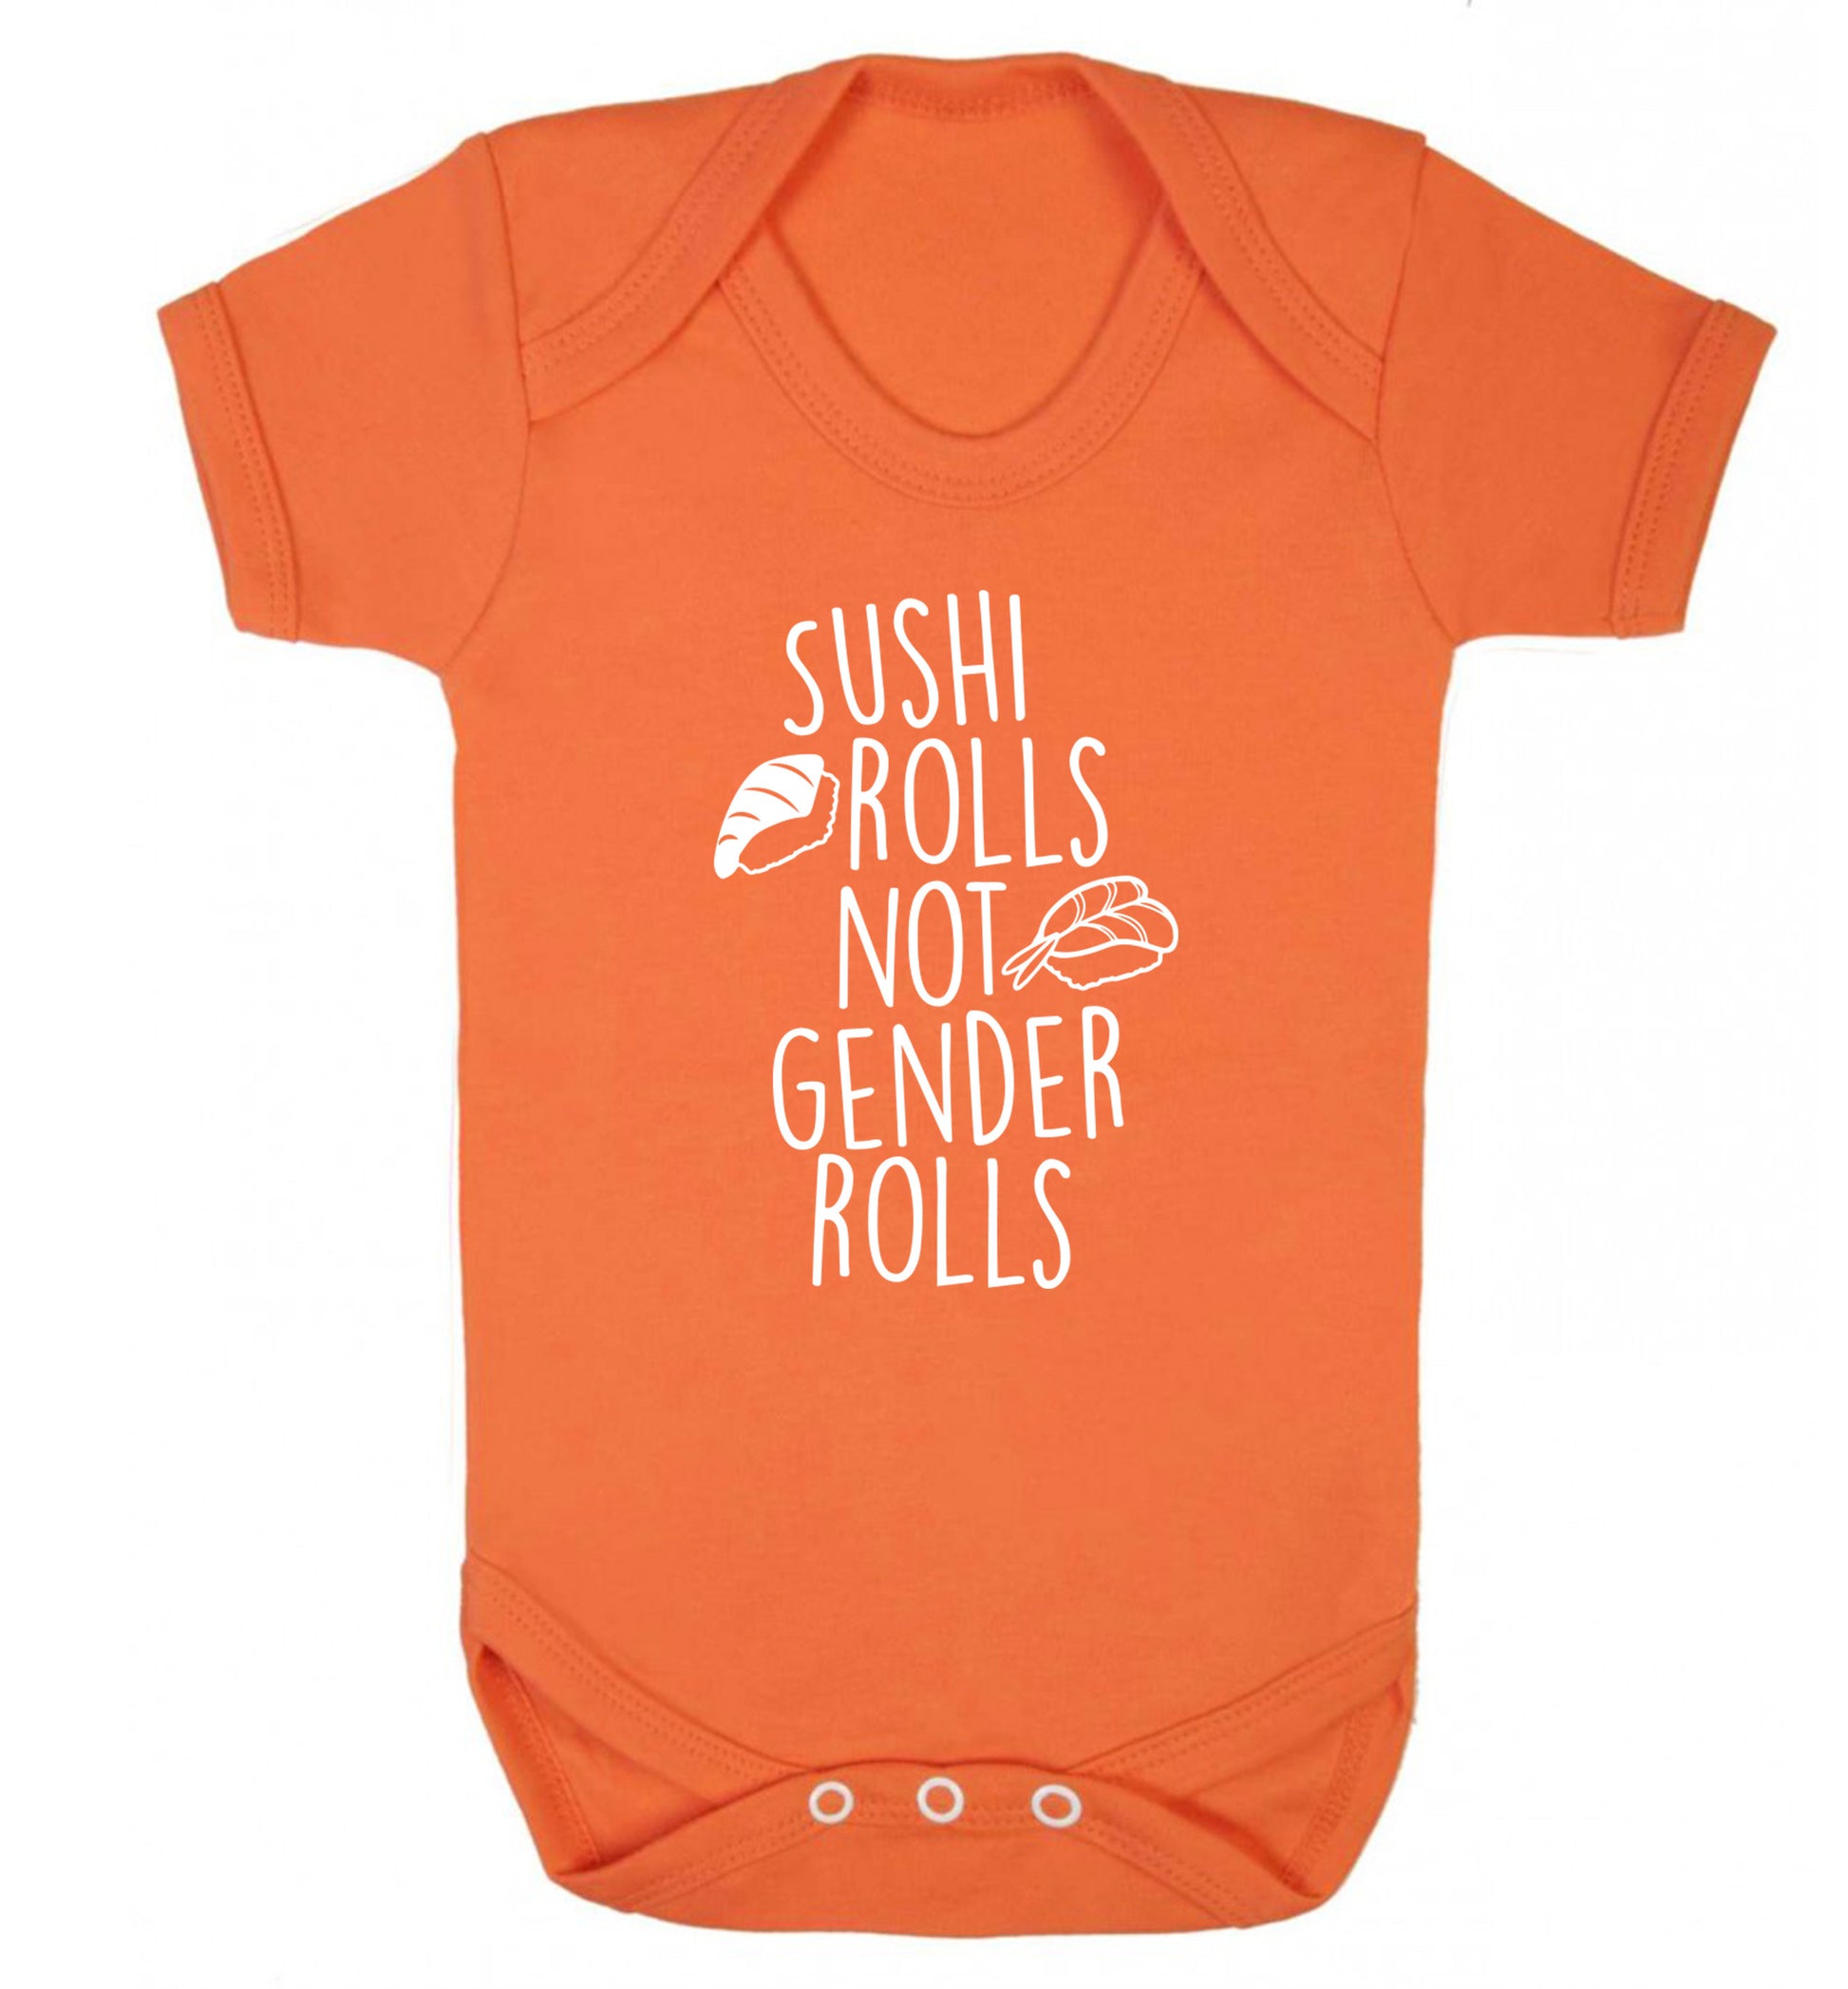 Sushi rolls not gender rolls Baby Vest orange 18-24 months